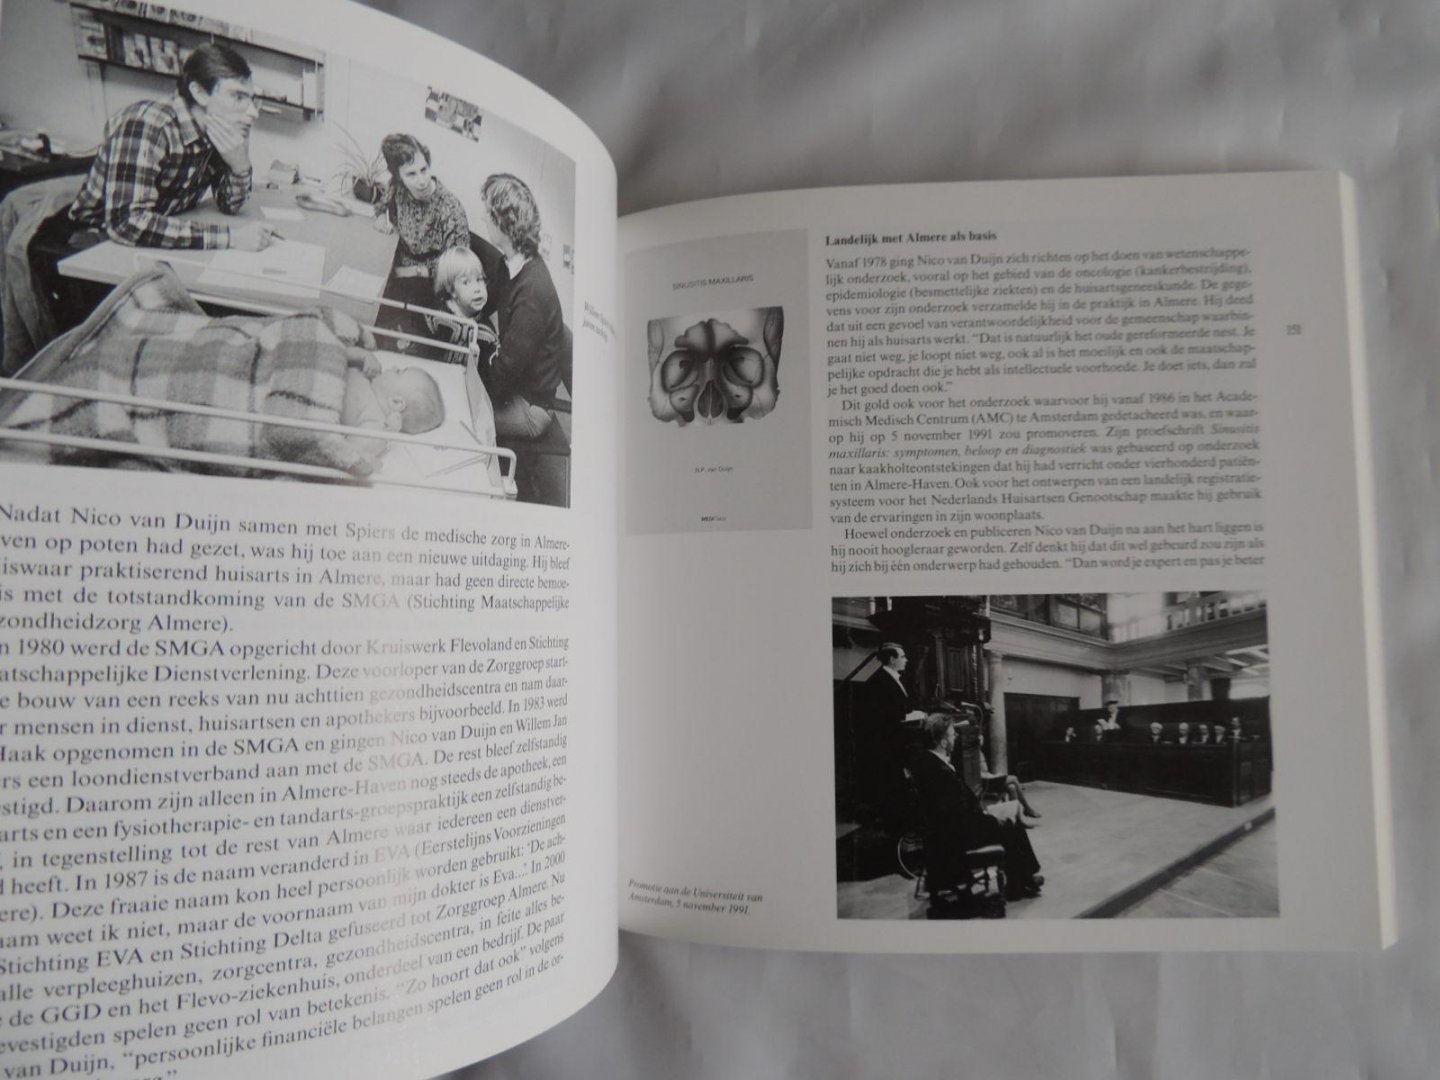 erik boshuijzen /// theo dirks /// van der most .///  ea. - Cultuur historisch jaarboek voor Flevoland 2003.  Flevolanders schrijven geschiedenis